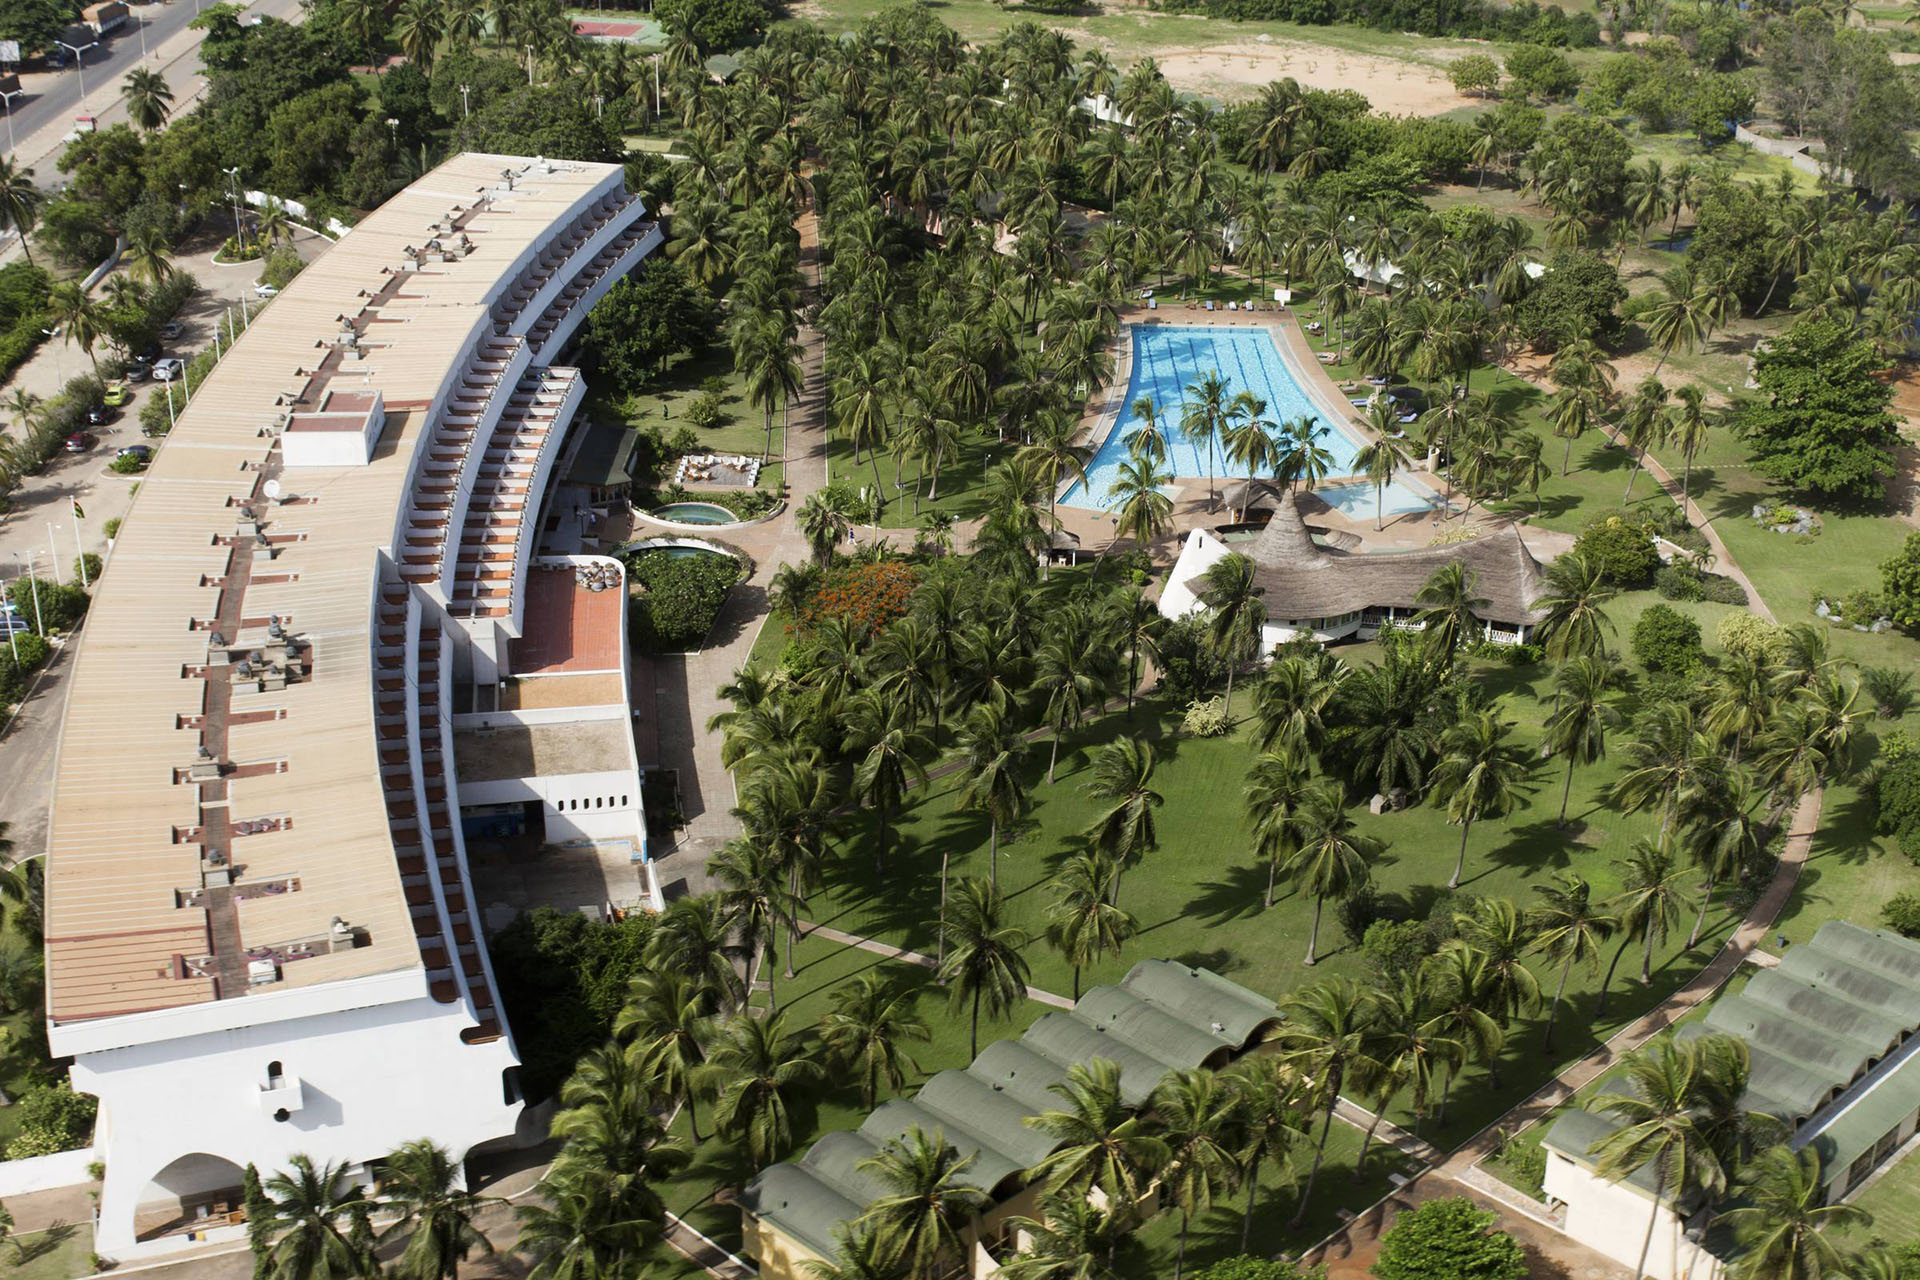 2016 West Africa – Togo – Hotel Sarakawa